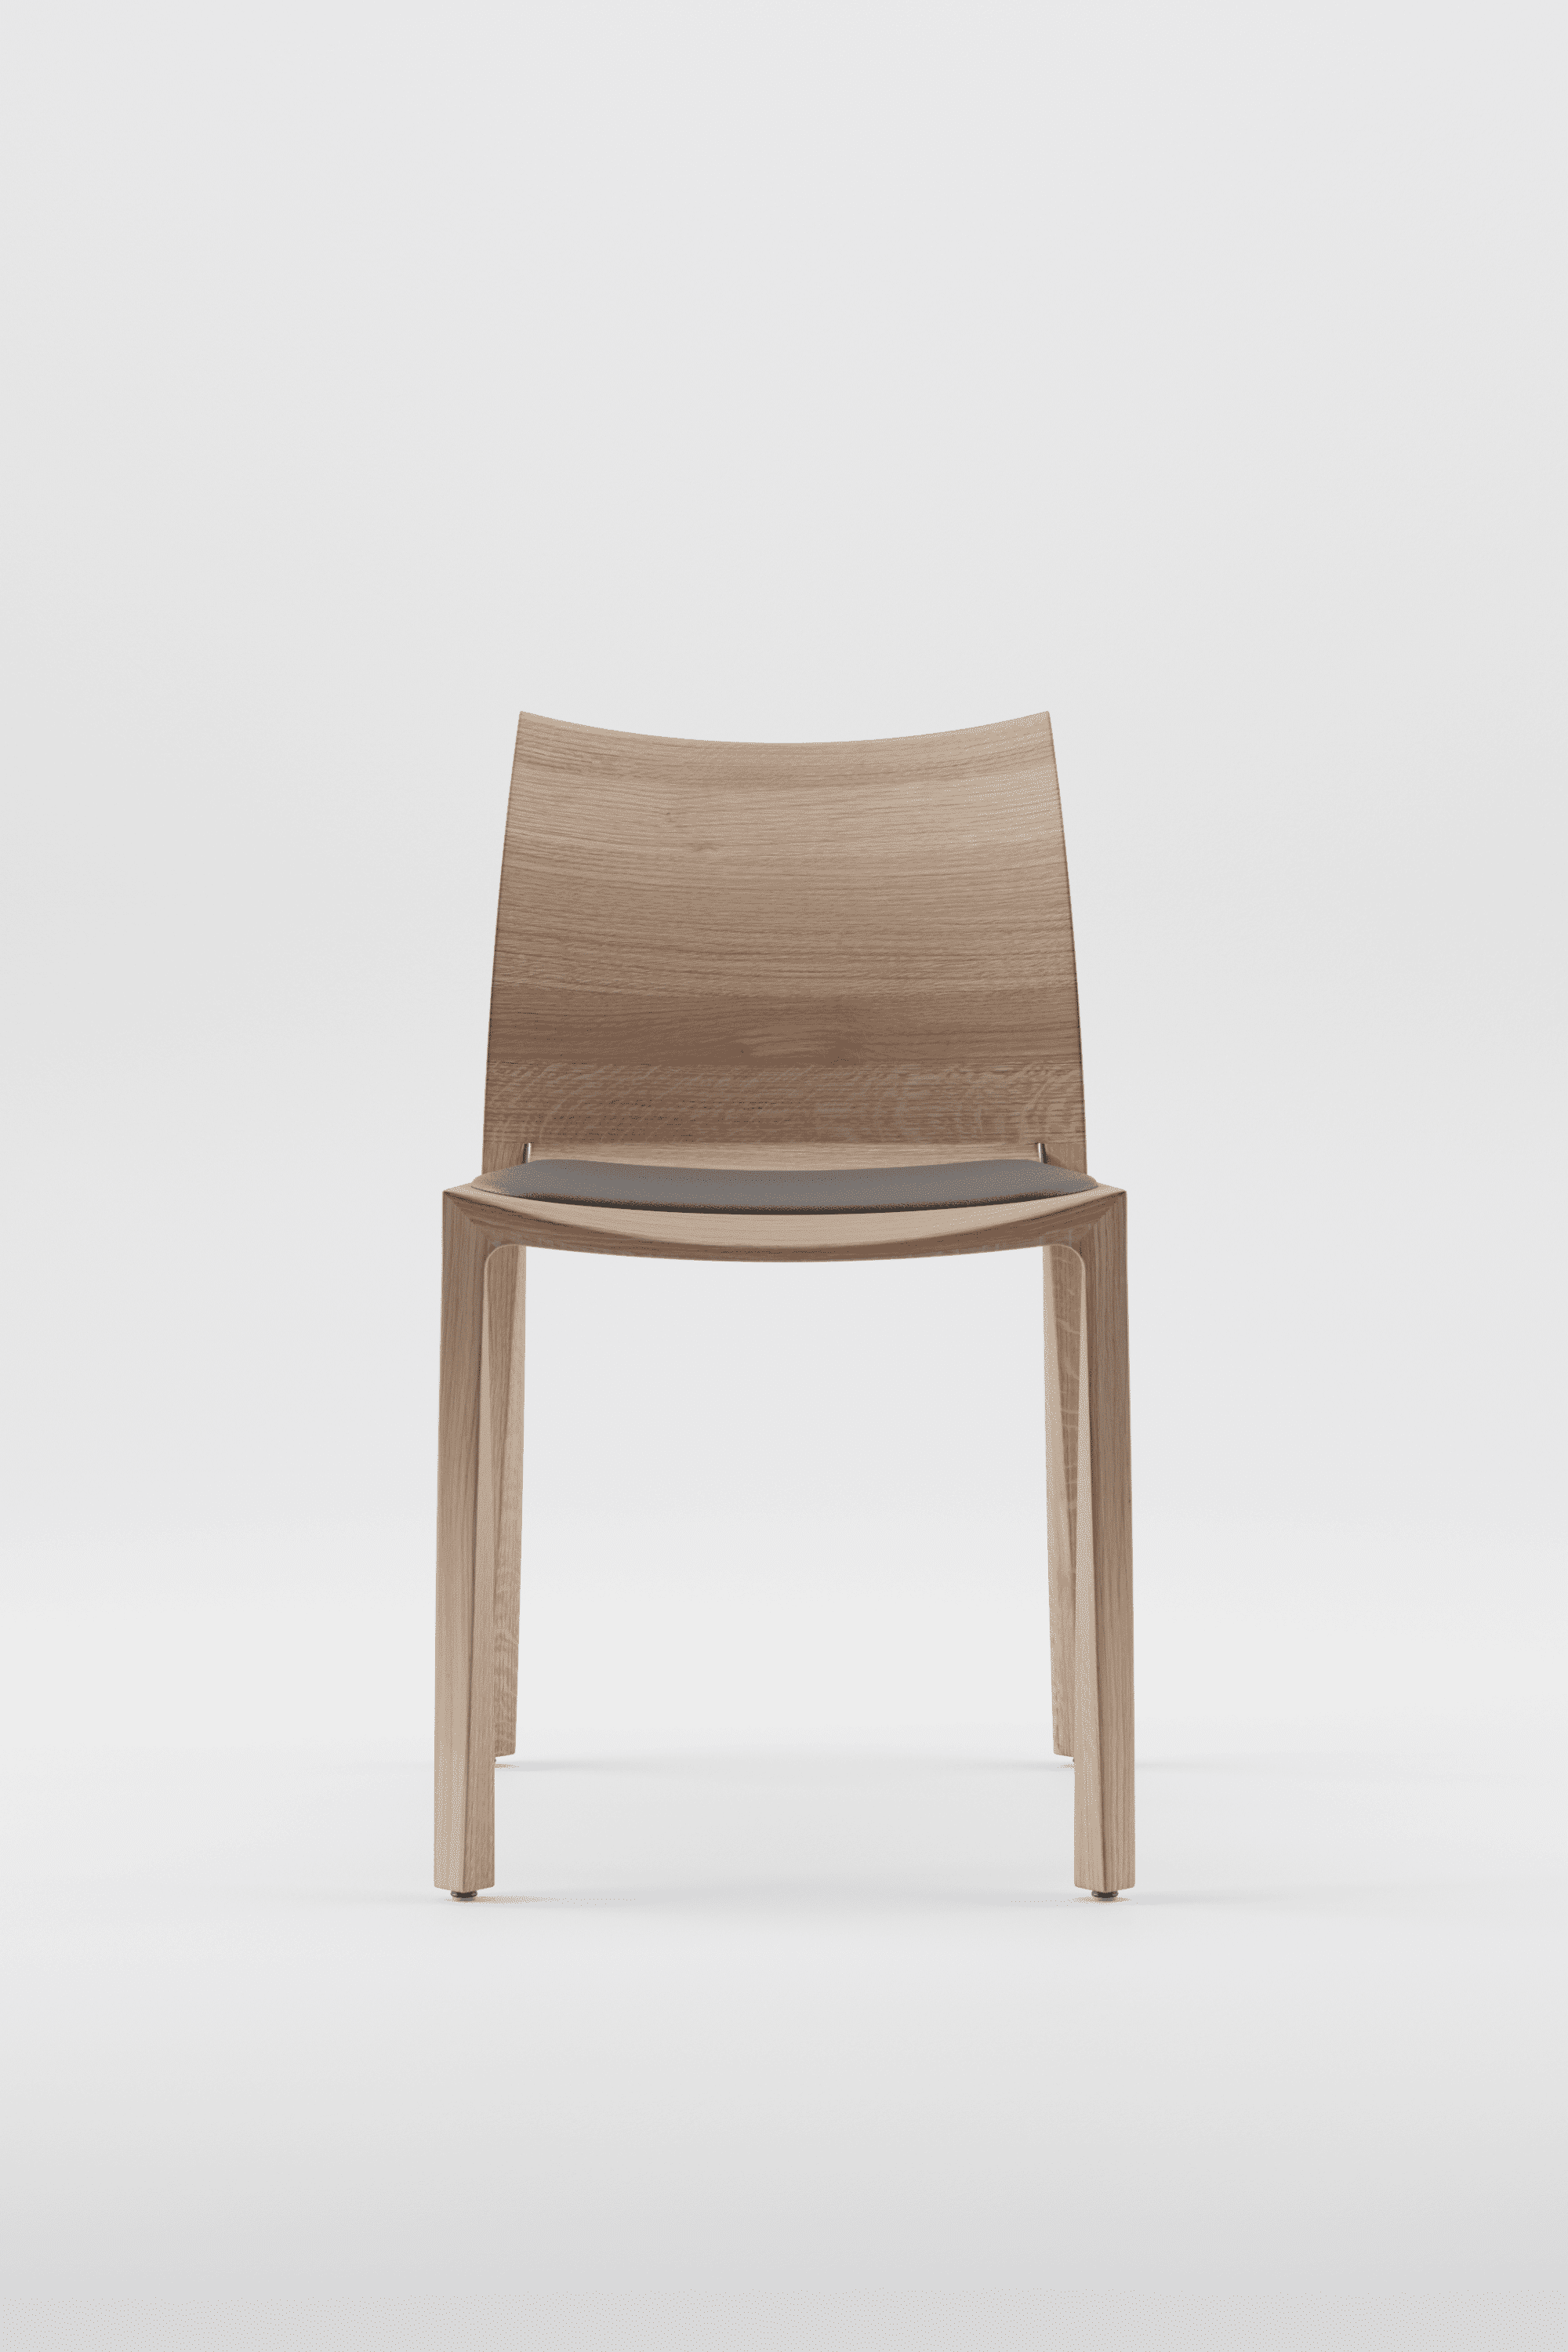 Holzstuhl mit gepolsterter Sitzfläche - Torsio